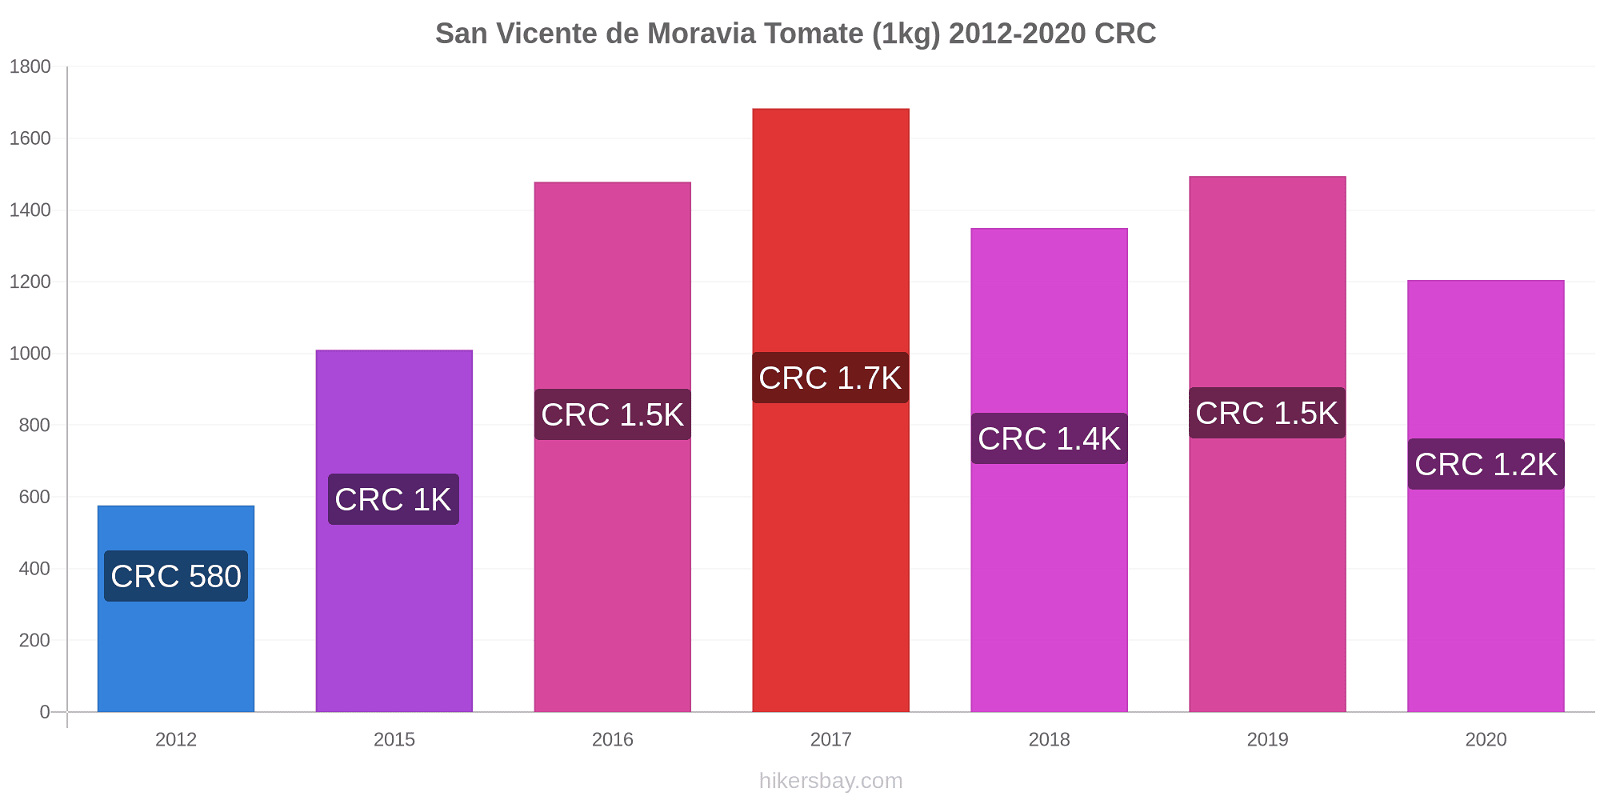 San Vicente de Moravia variação de preço Tomate (1kg) hikersbay.com